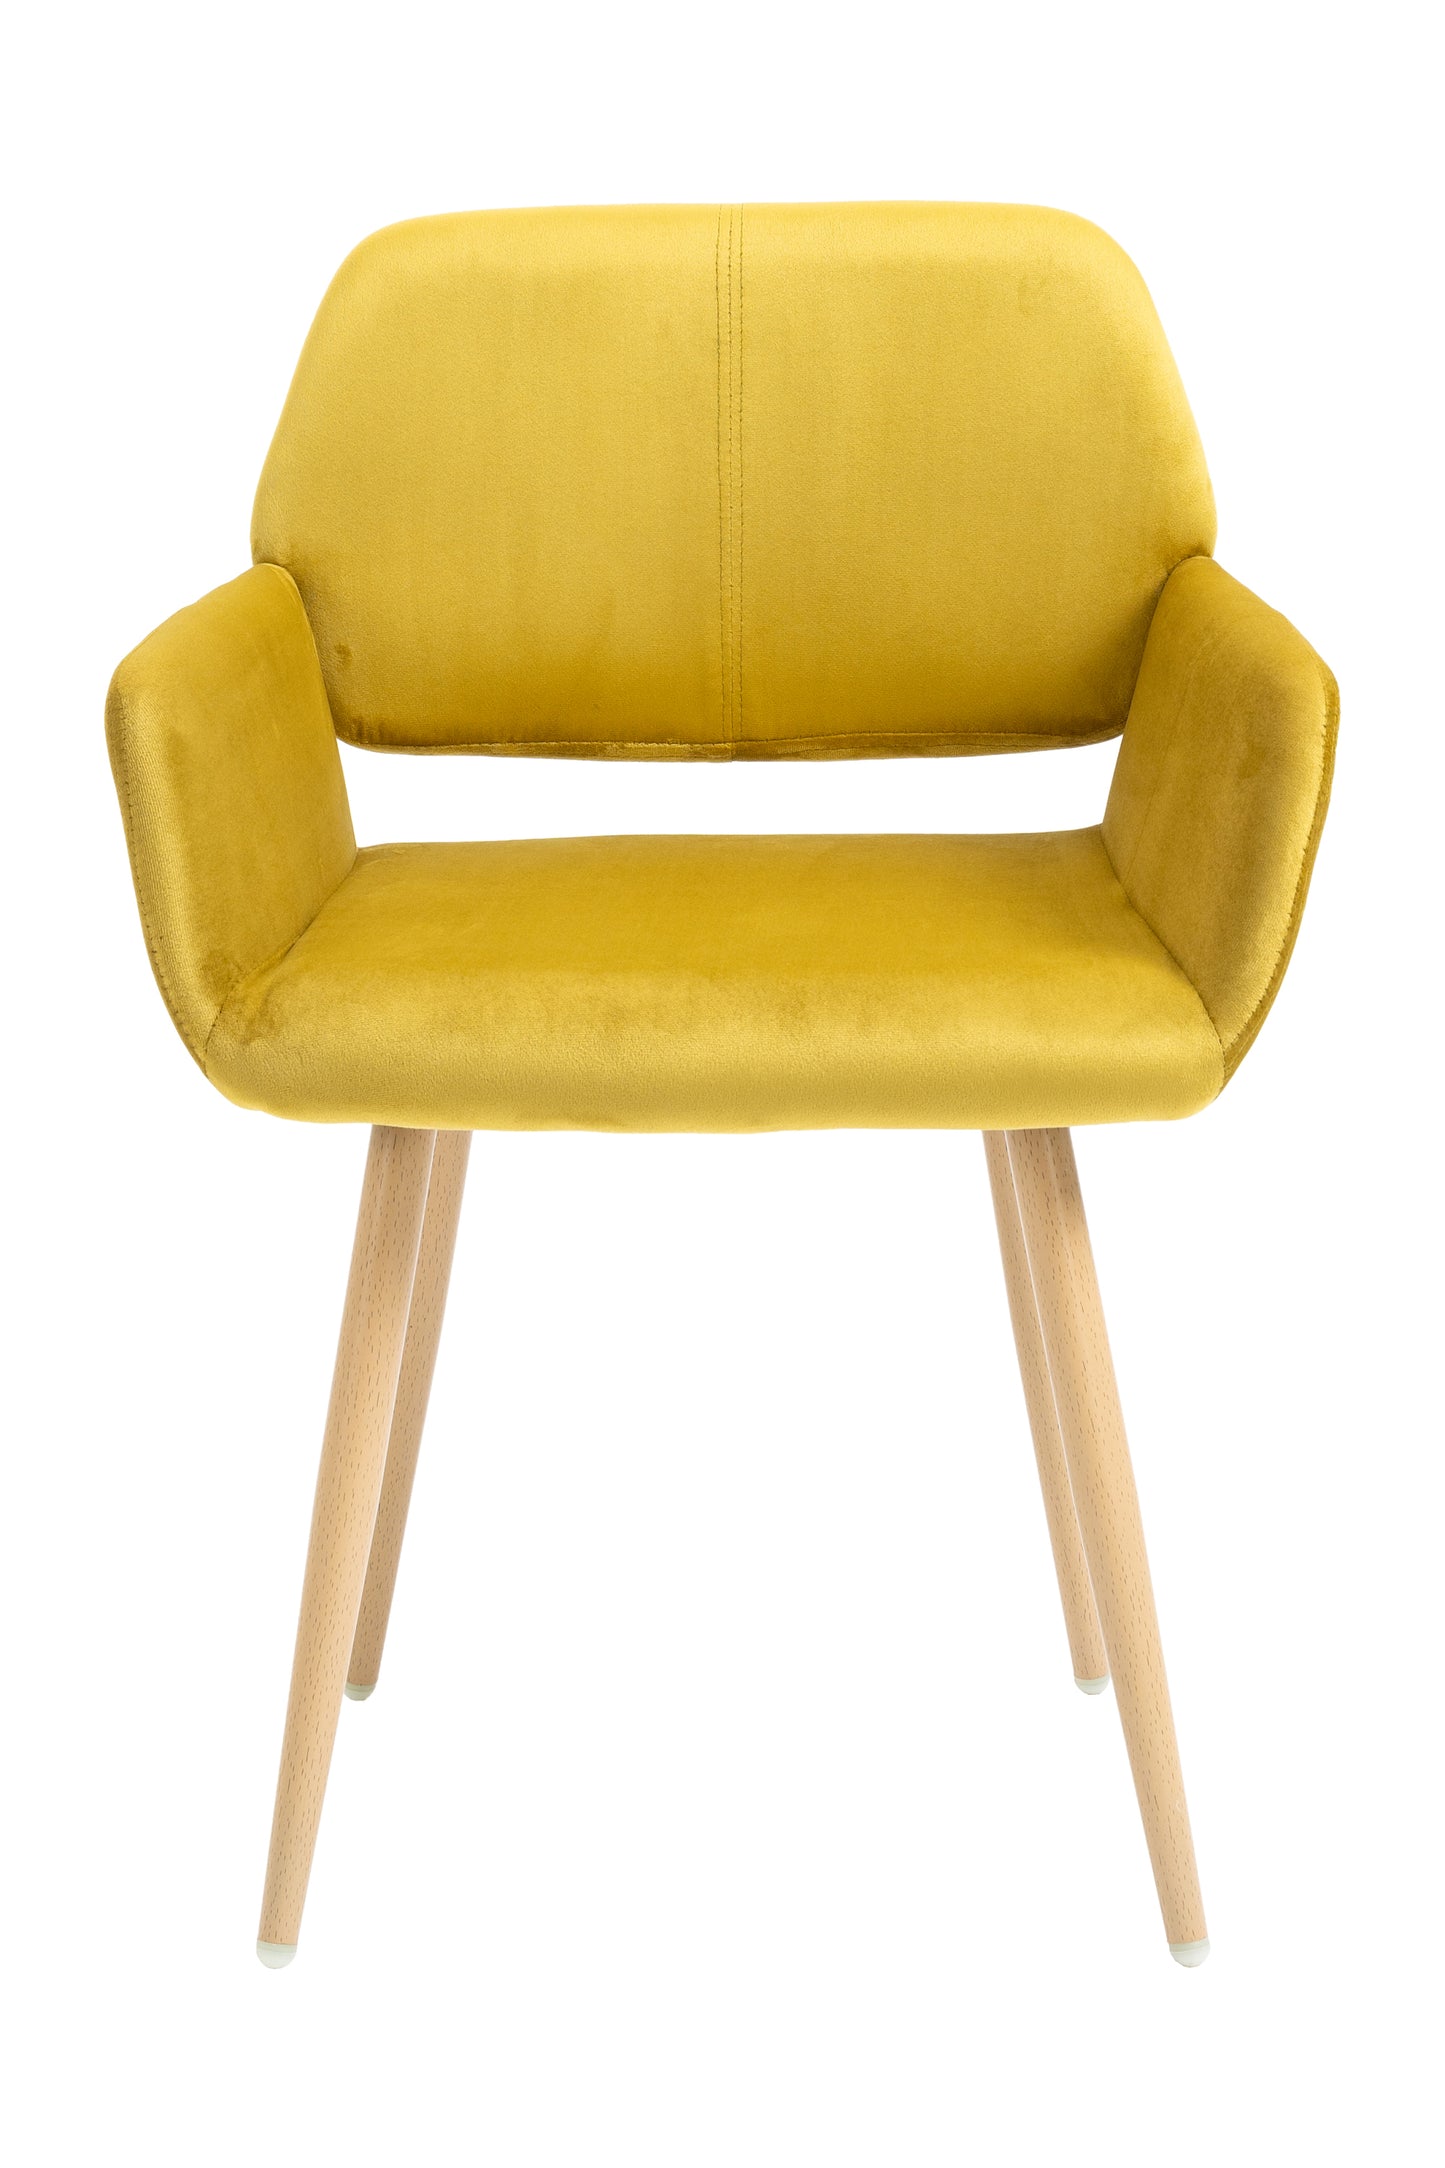 Velet Upholstered Side Dining Chair with Metal Leg(Yellow velet+Beech Wooden Printing Leg) - Ukerr Home